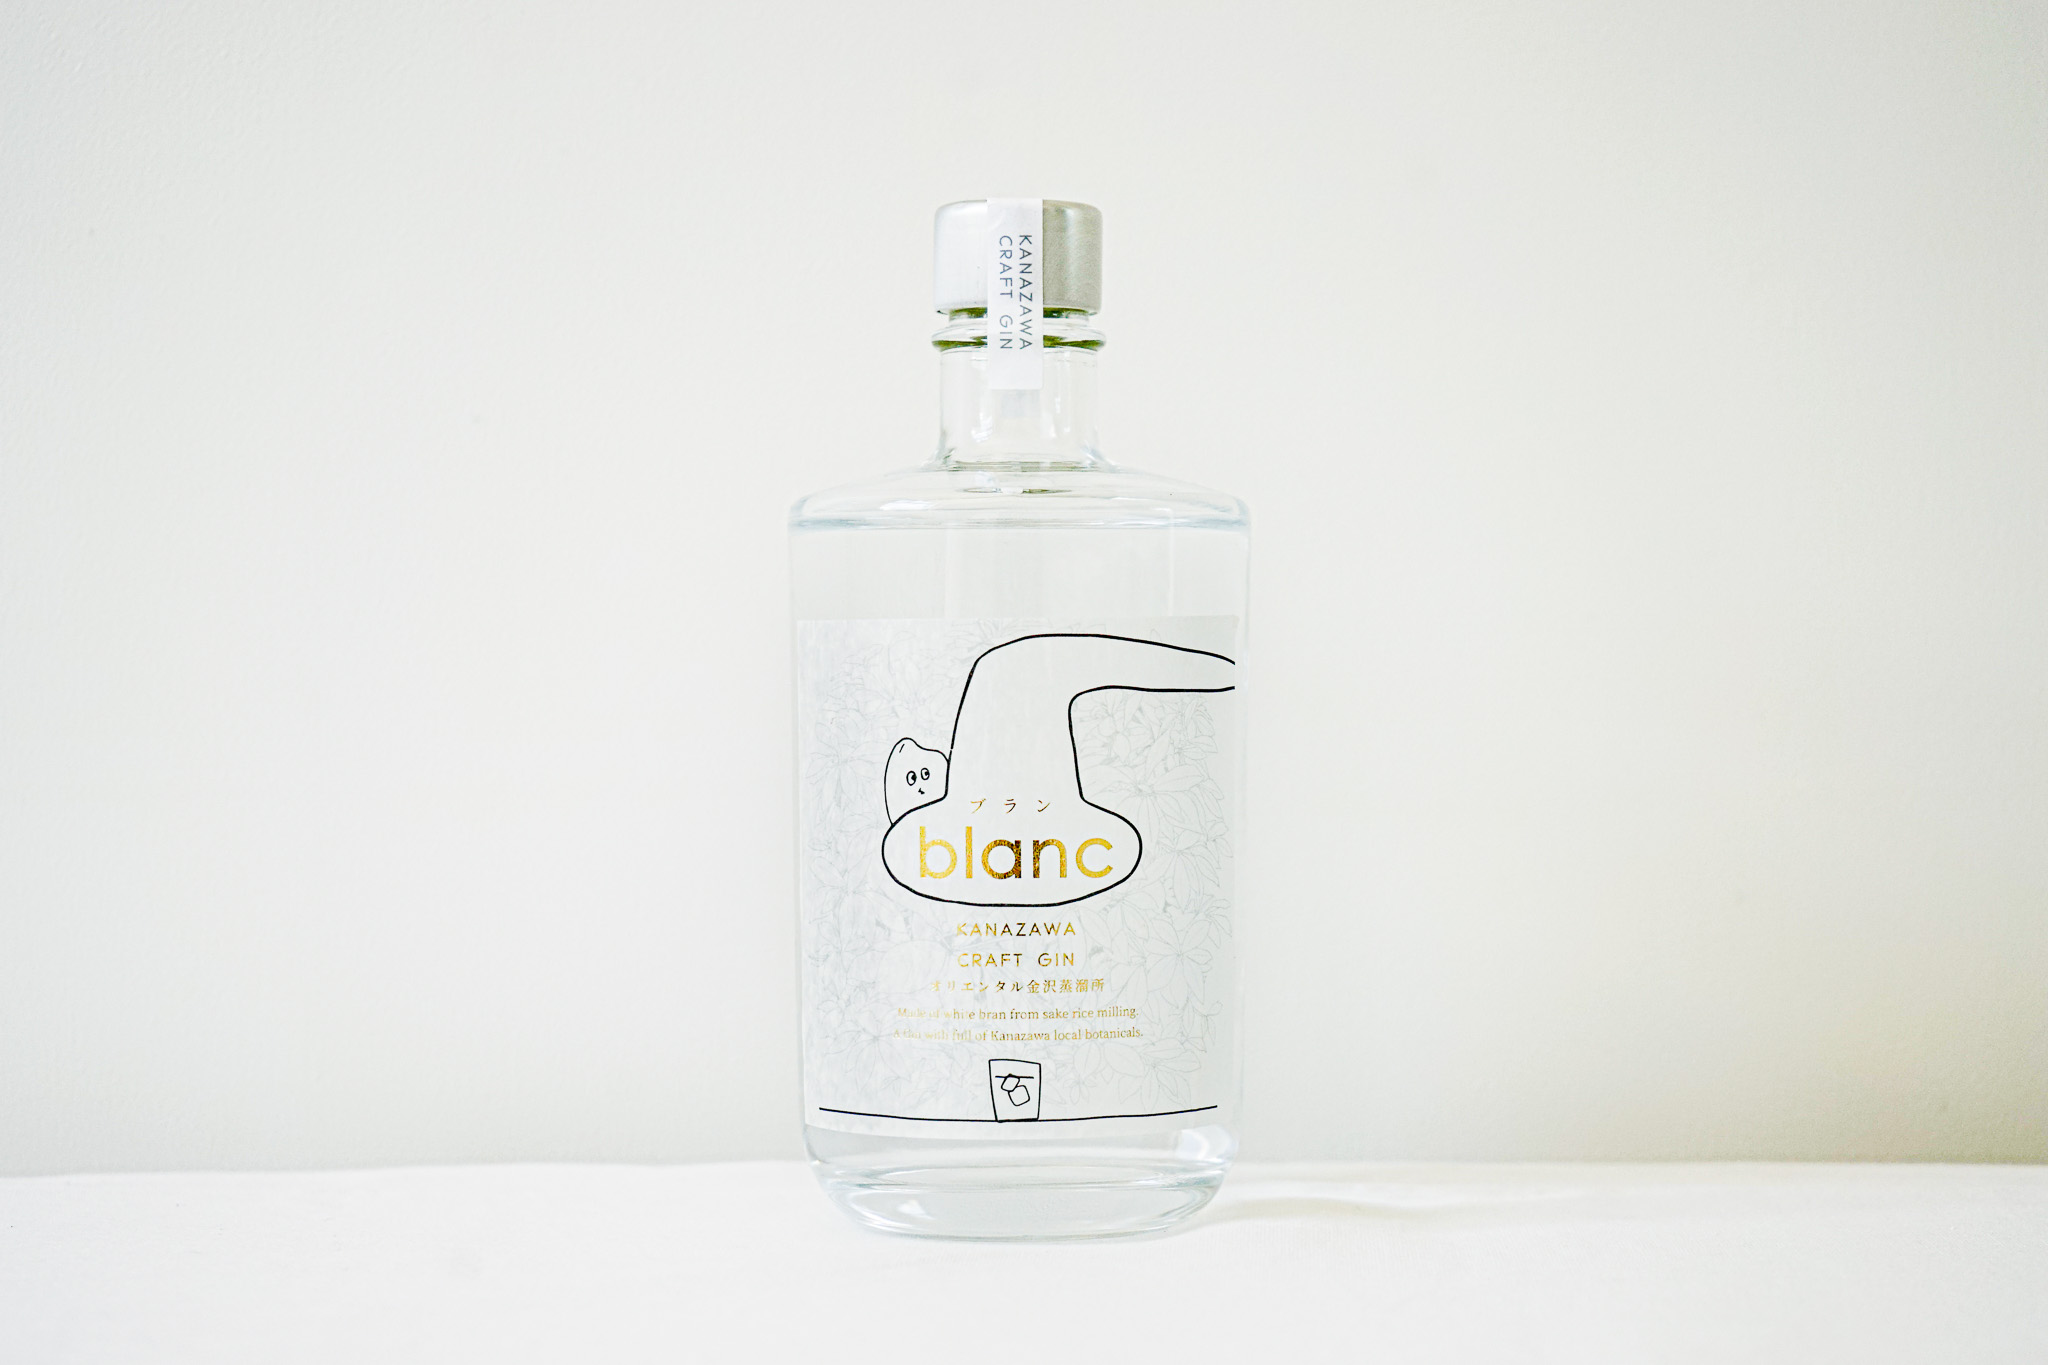 【Take out】"blanc" Craft Gin Of Rice